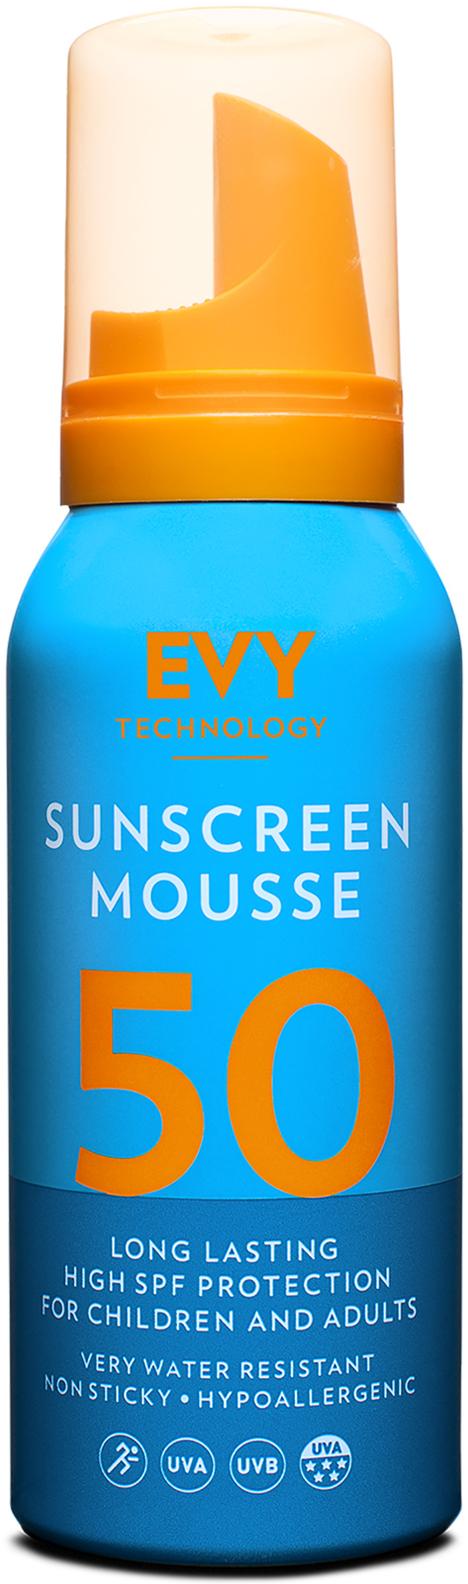 Evy Sunscreen Mousse SPF50 100 ml för 229 kr på Apotek Hjärtat